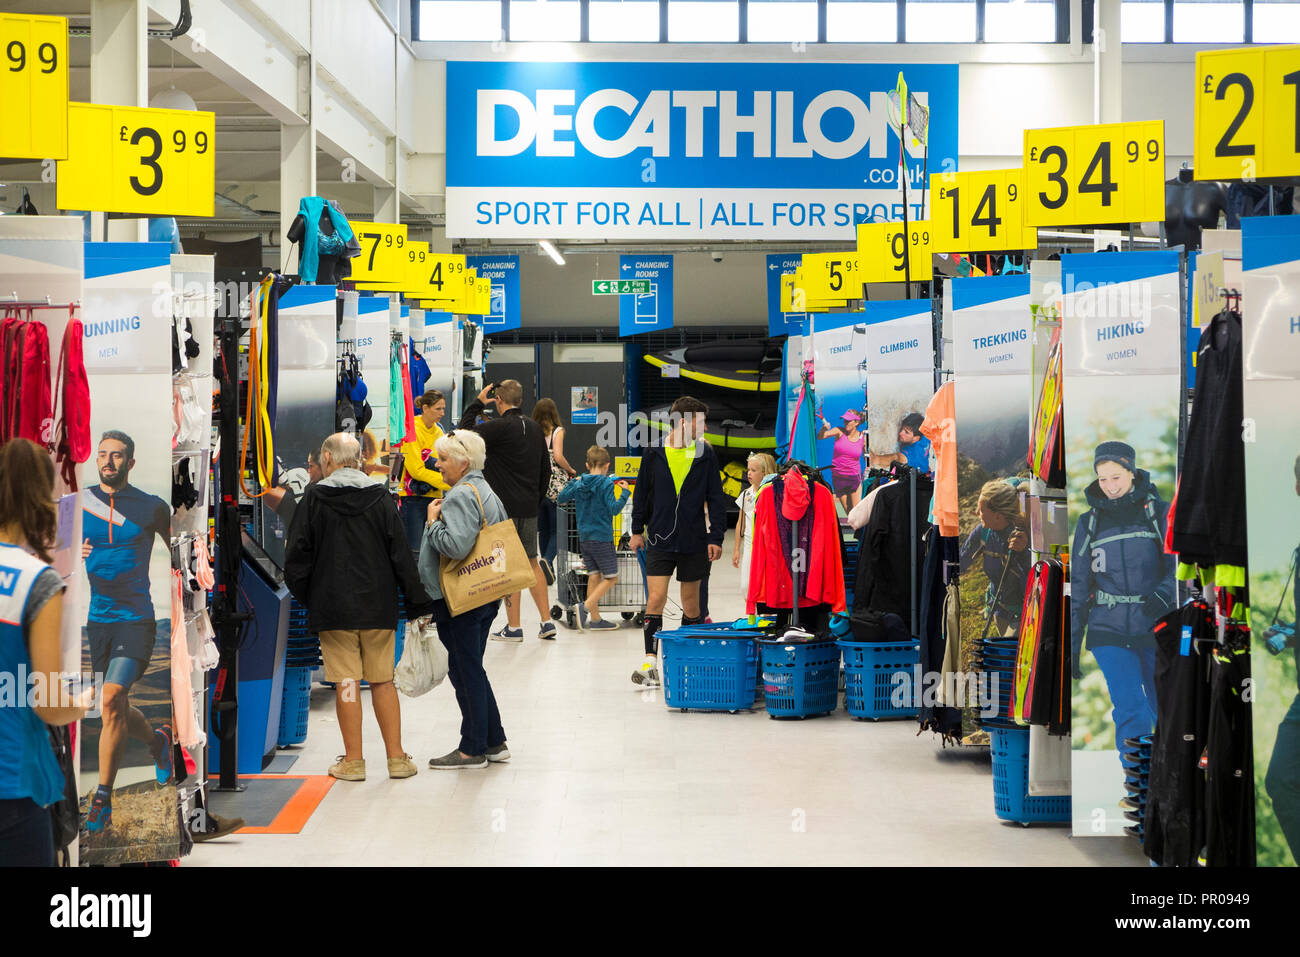 Shop intérieur / à l'intérieur de la sport Decathlon / Articles / boutique / magasin détaillant à Guildford. Surrey. UK. (102) Banque D'Images